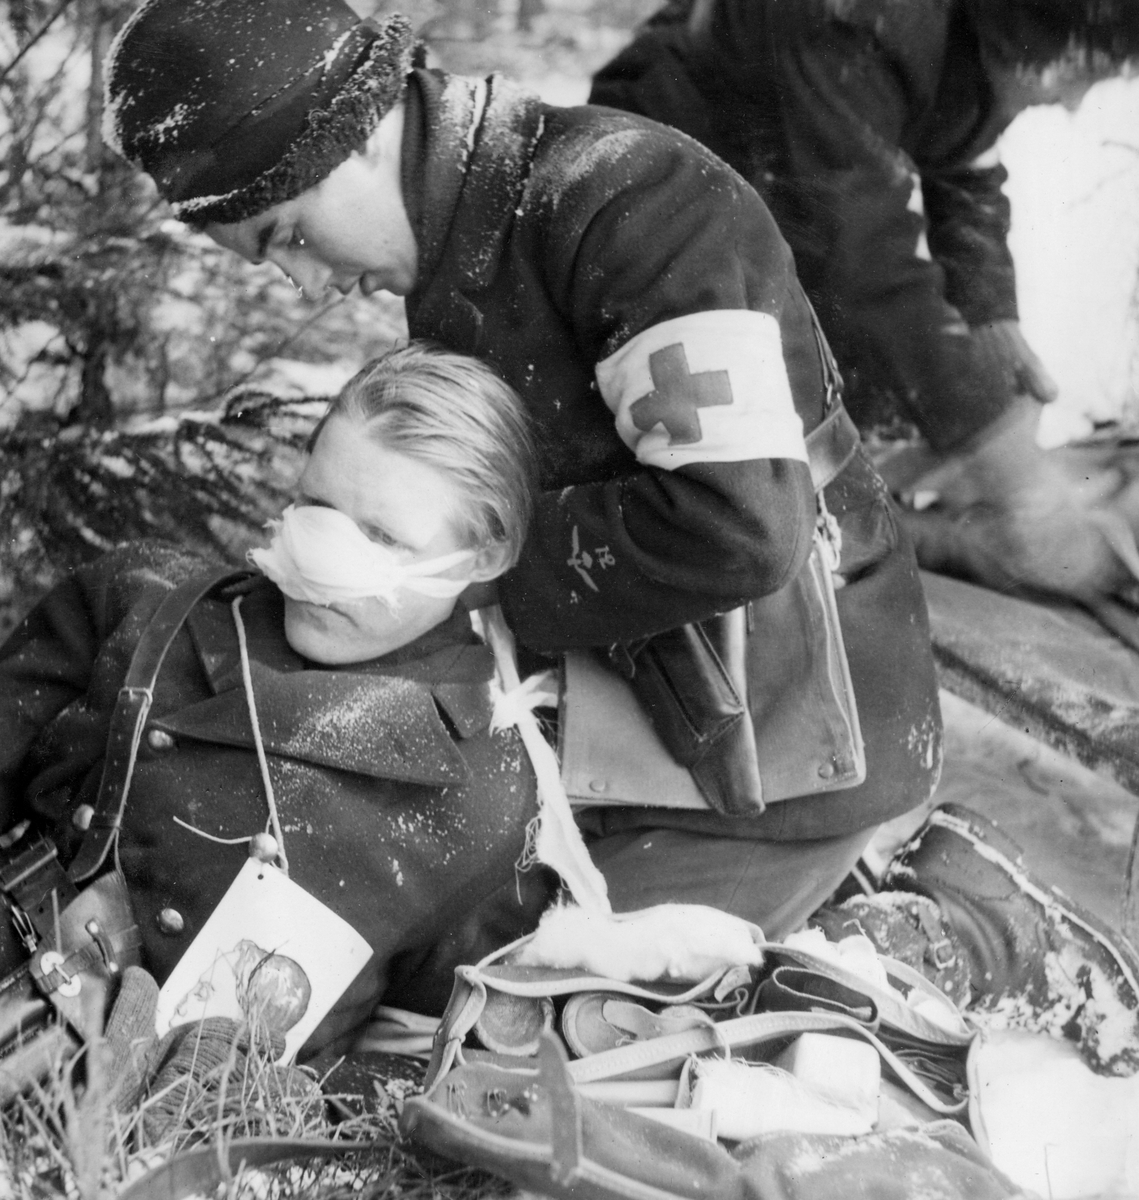 Första hjälpen utförs på soldat som agerar skadad vid sjukvårdsövning i fält vid F 11 Södermanlands flygflottilj, 1945. Omplåstring av grantskadad näsa.

Vintertid.

Ur fotoalbum "Sjukvårdsskolan 15/1-15/3 1945" från F 11.